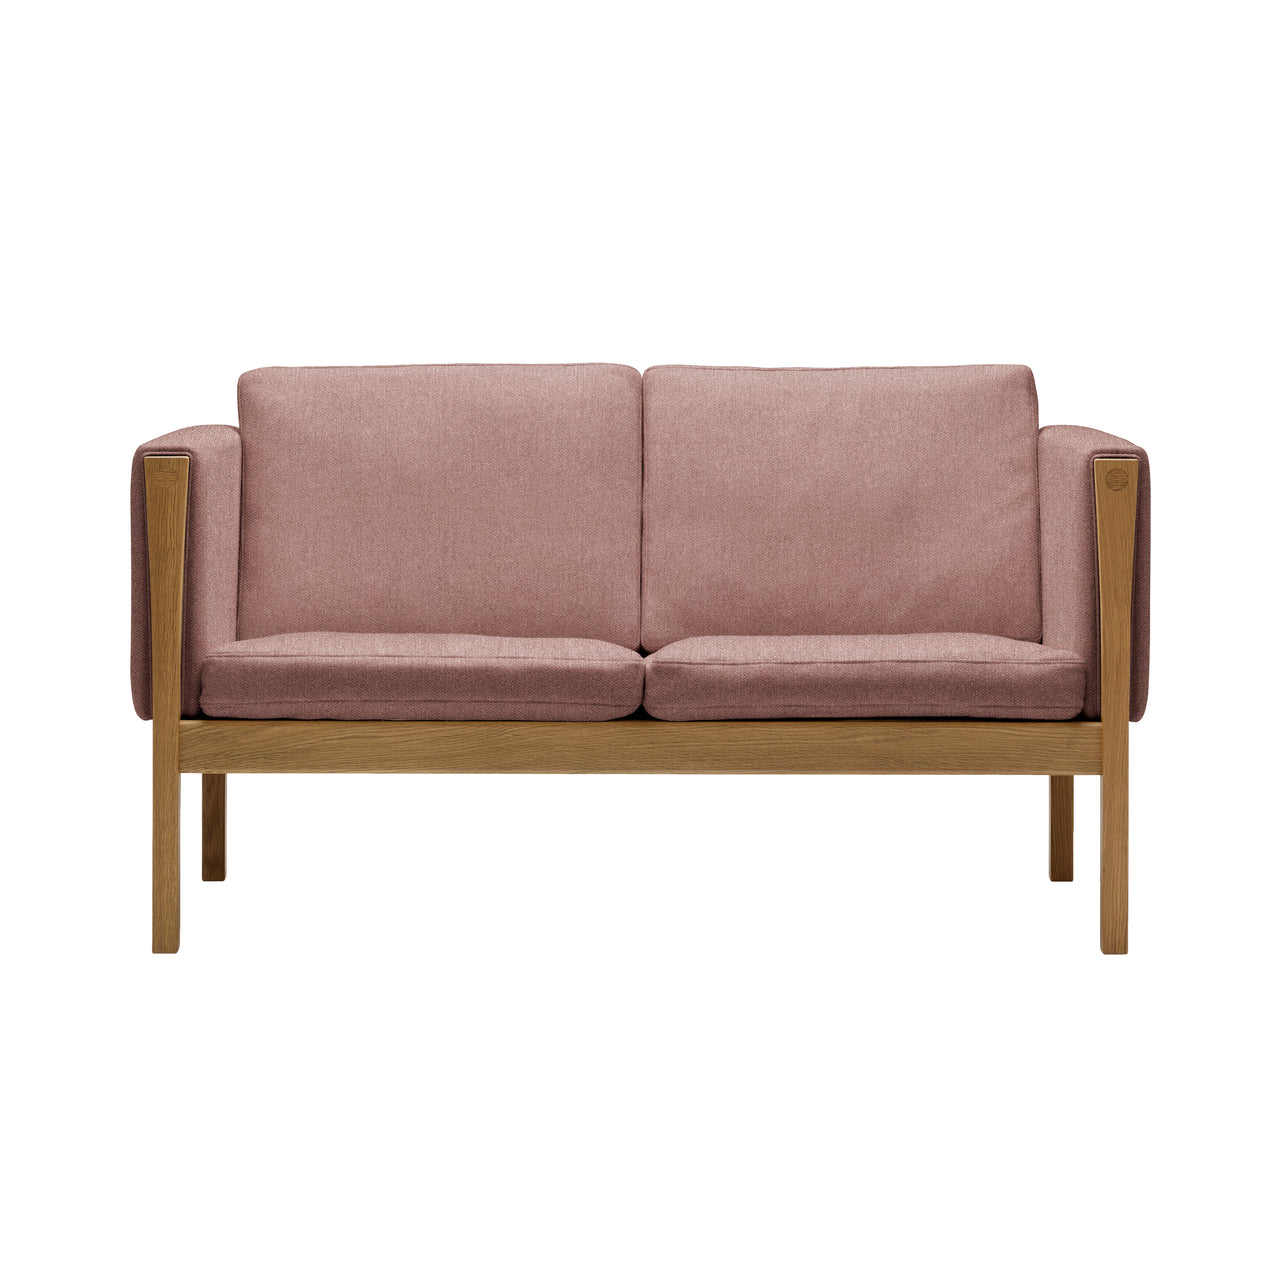 CH162 2 Seater Sofa: Oiled Oak